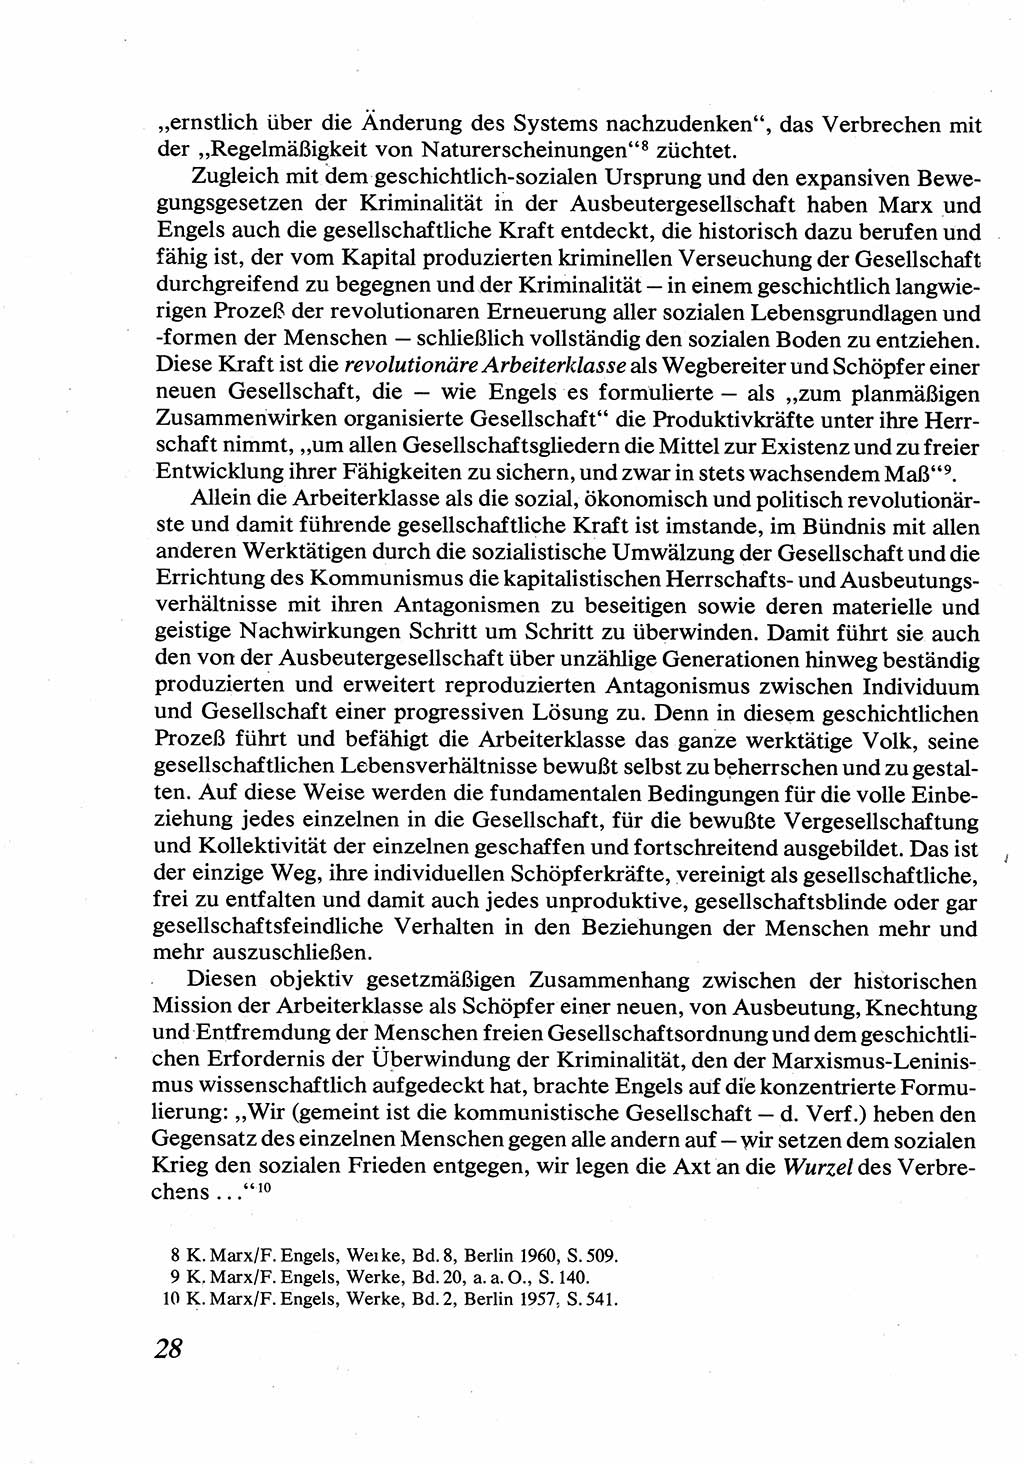 Strafrecht [Deutsche Demokratische Republik (DDR)], Allgemeiner Teil, Lehrbuch 1976, Seite 28 (Strafr. DDR AT Lb. 1976, S. 28)